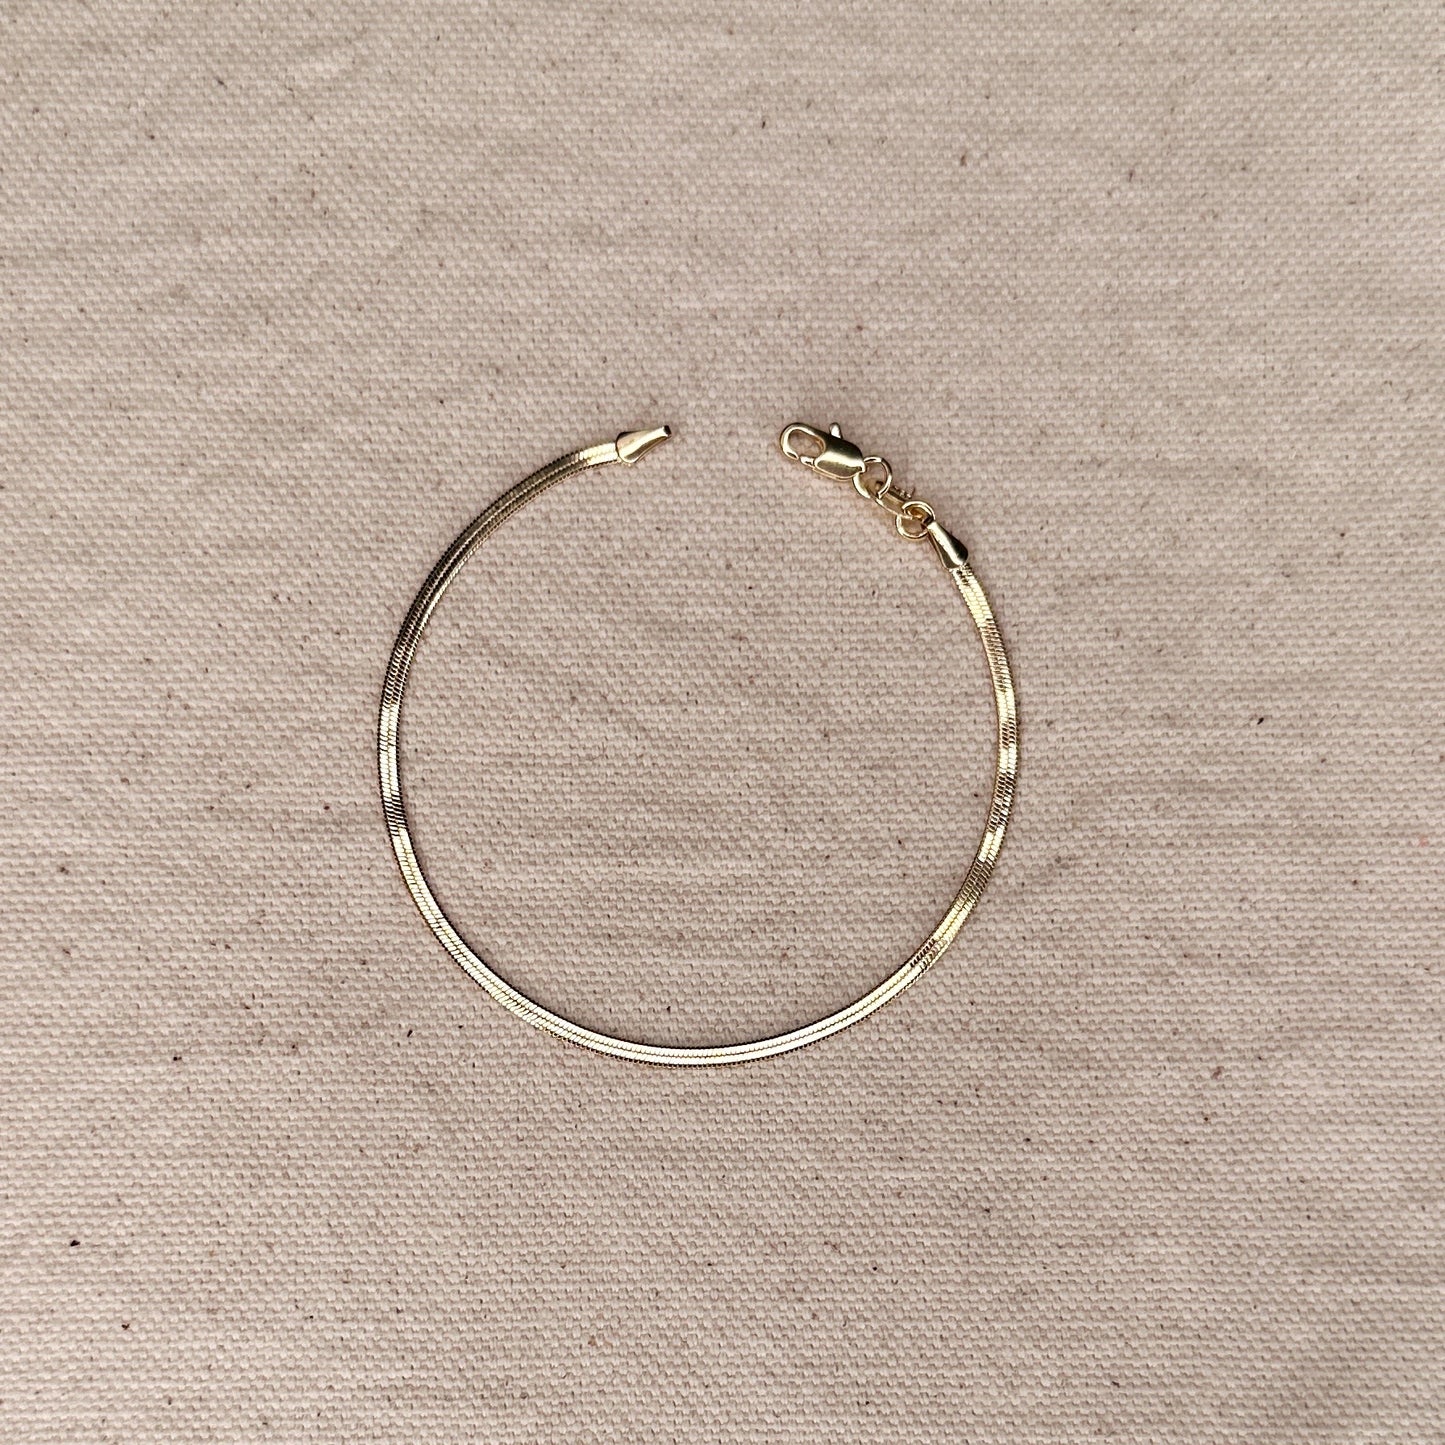 18k Gold Filled 2.0mm Thickness Herringbone Bracelet